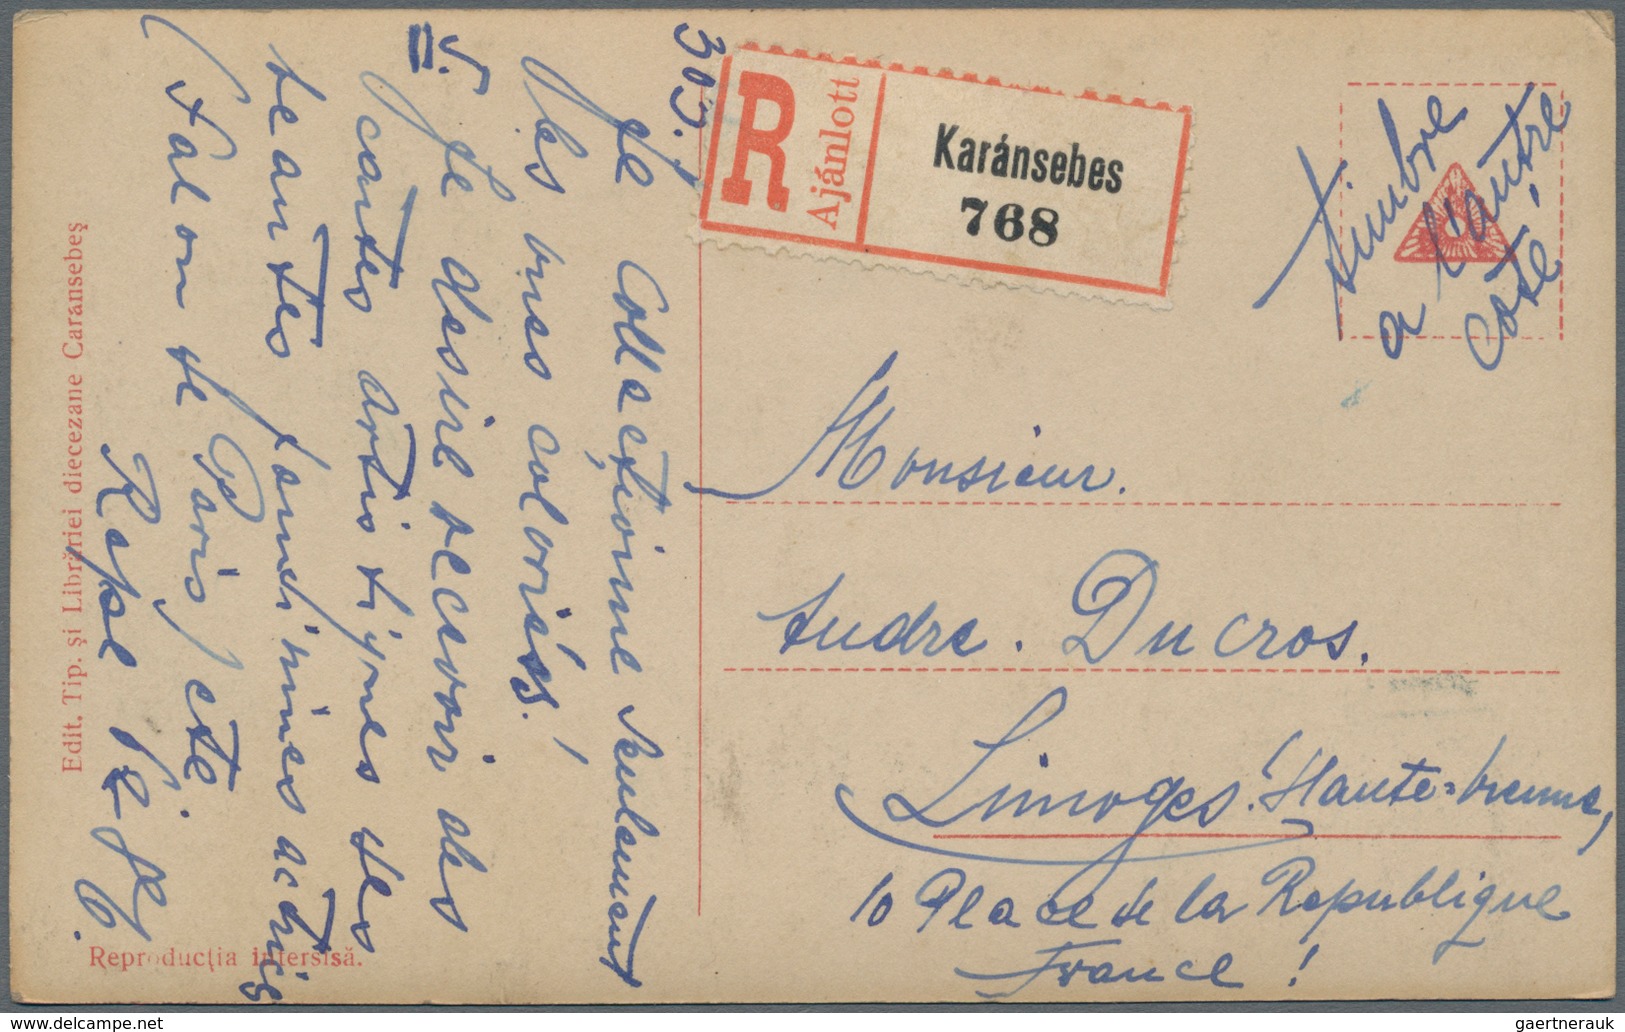 Rumänien: 1920 Picture Postcard Sent REGISTERED From Karánsebas To Limoges, France Franked On Pictur - Unused Stamps